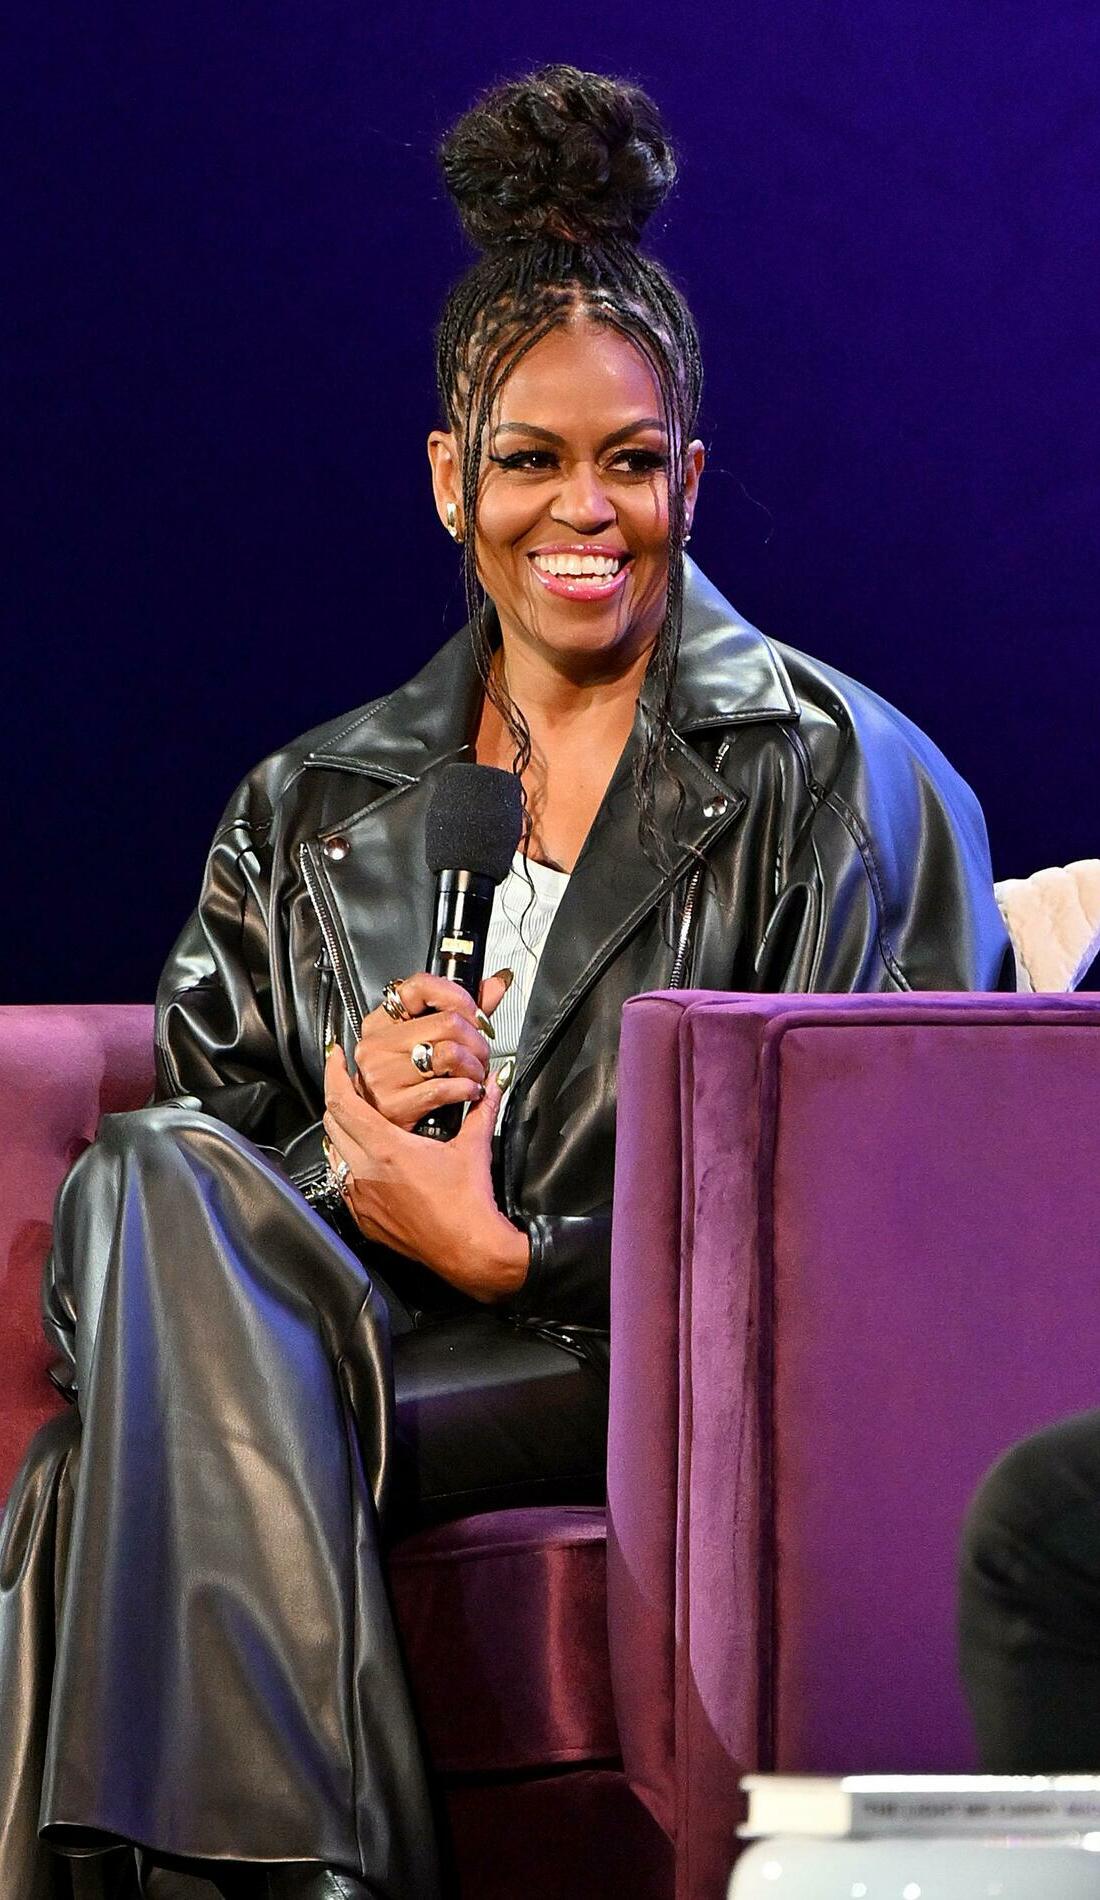 A Michelle Obama live event